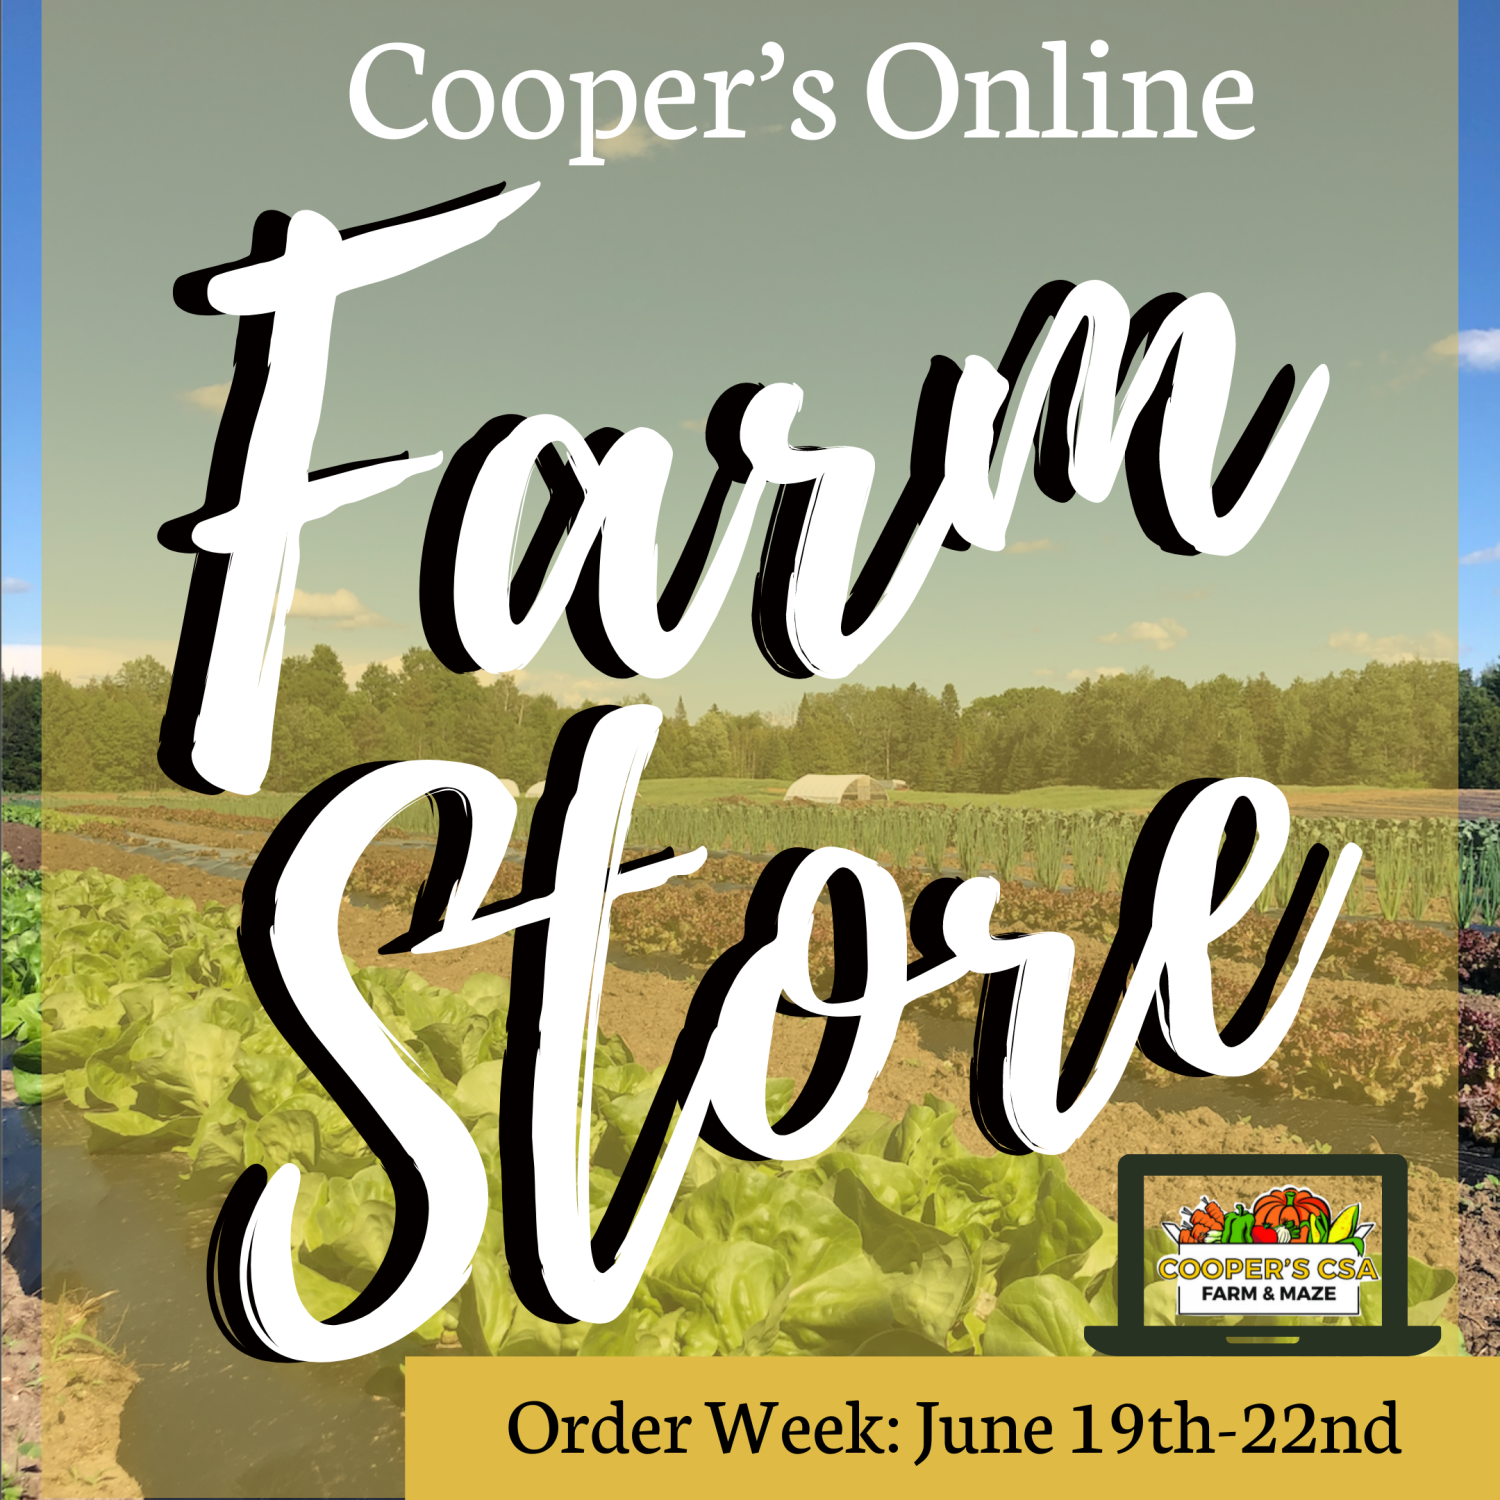 Coopers CSA Online FarmStore- Order week June 19th-22nd